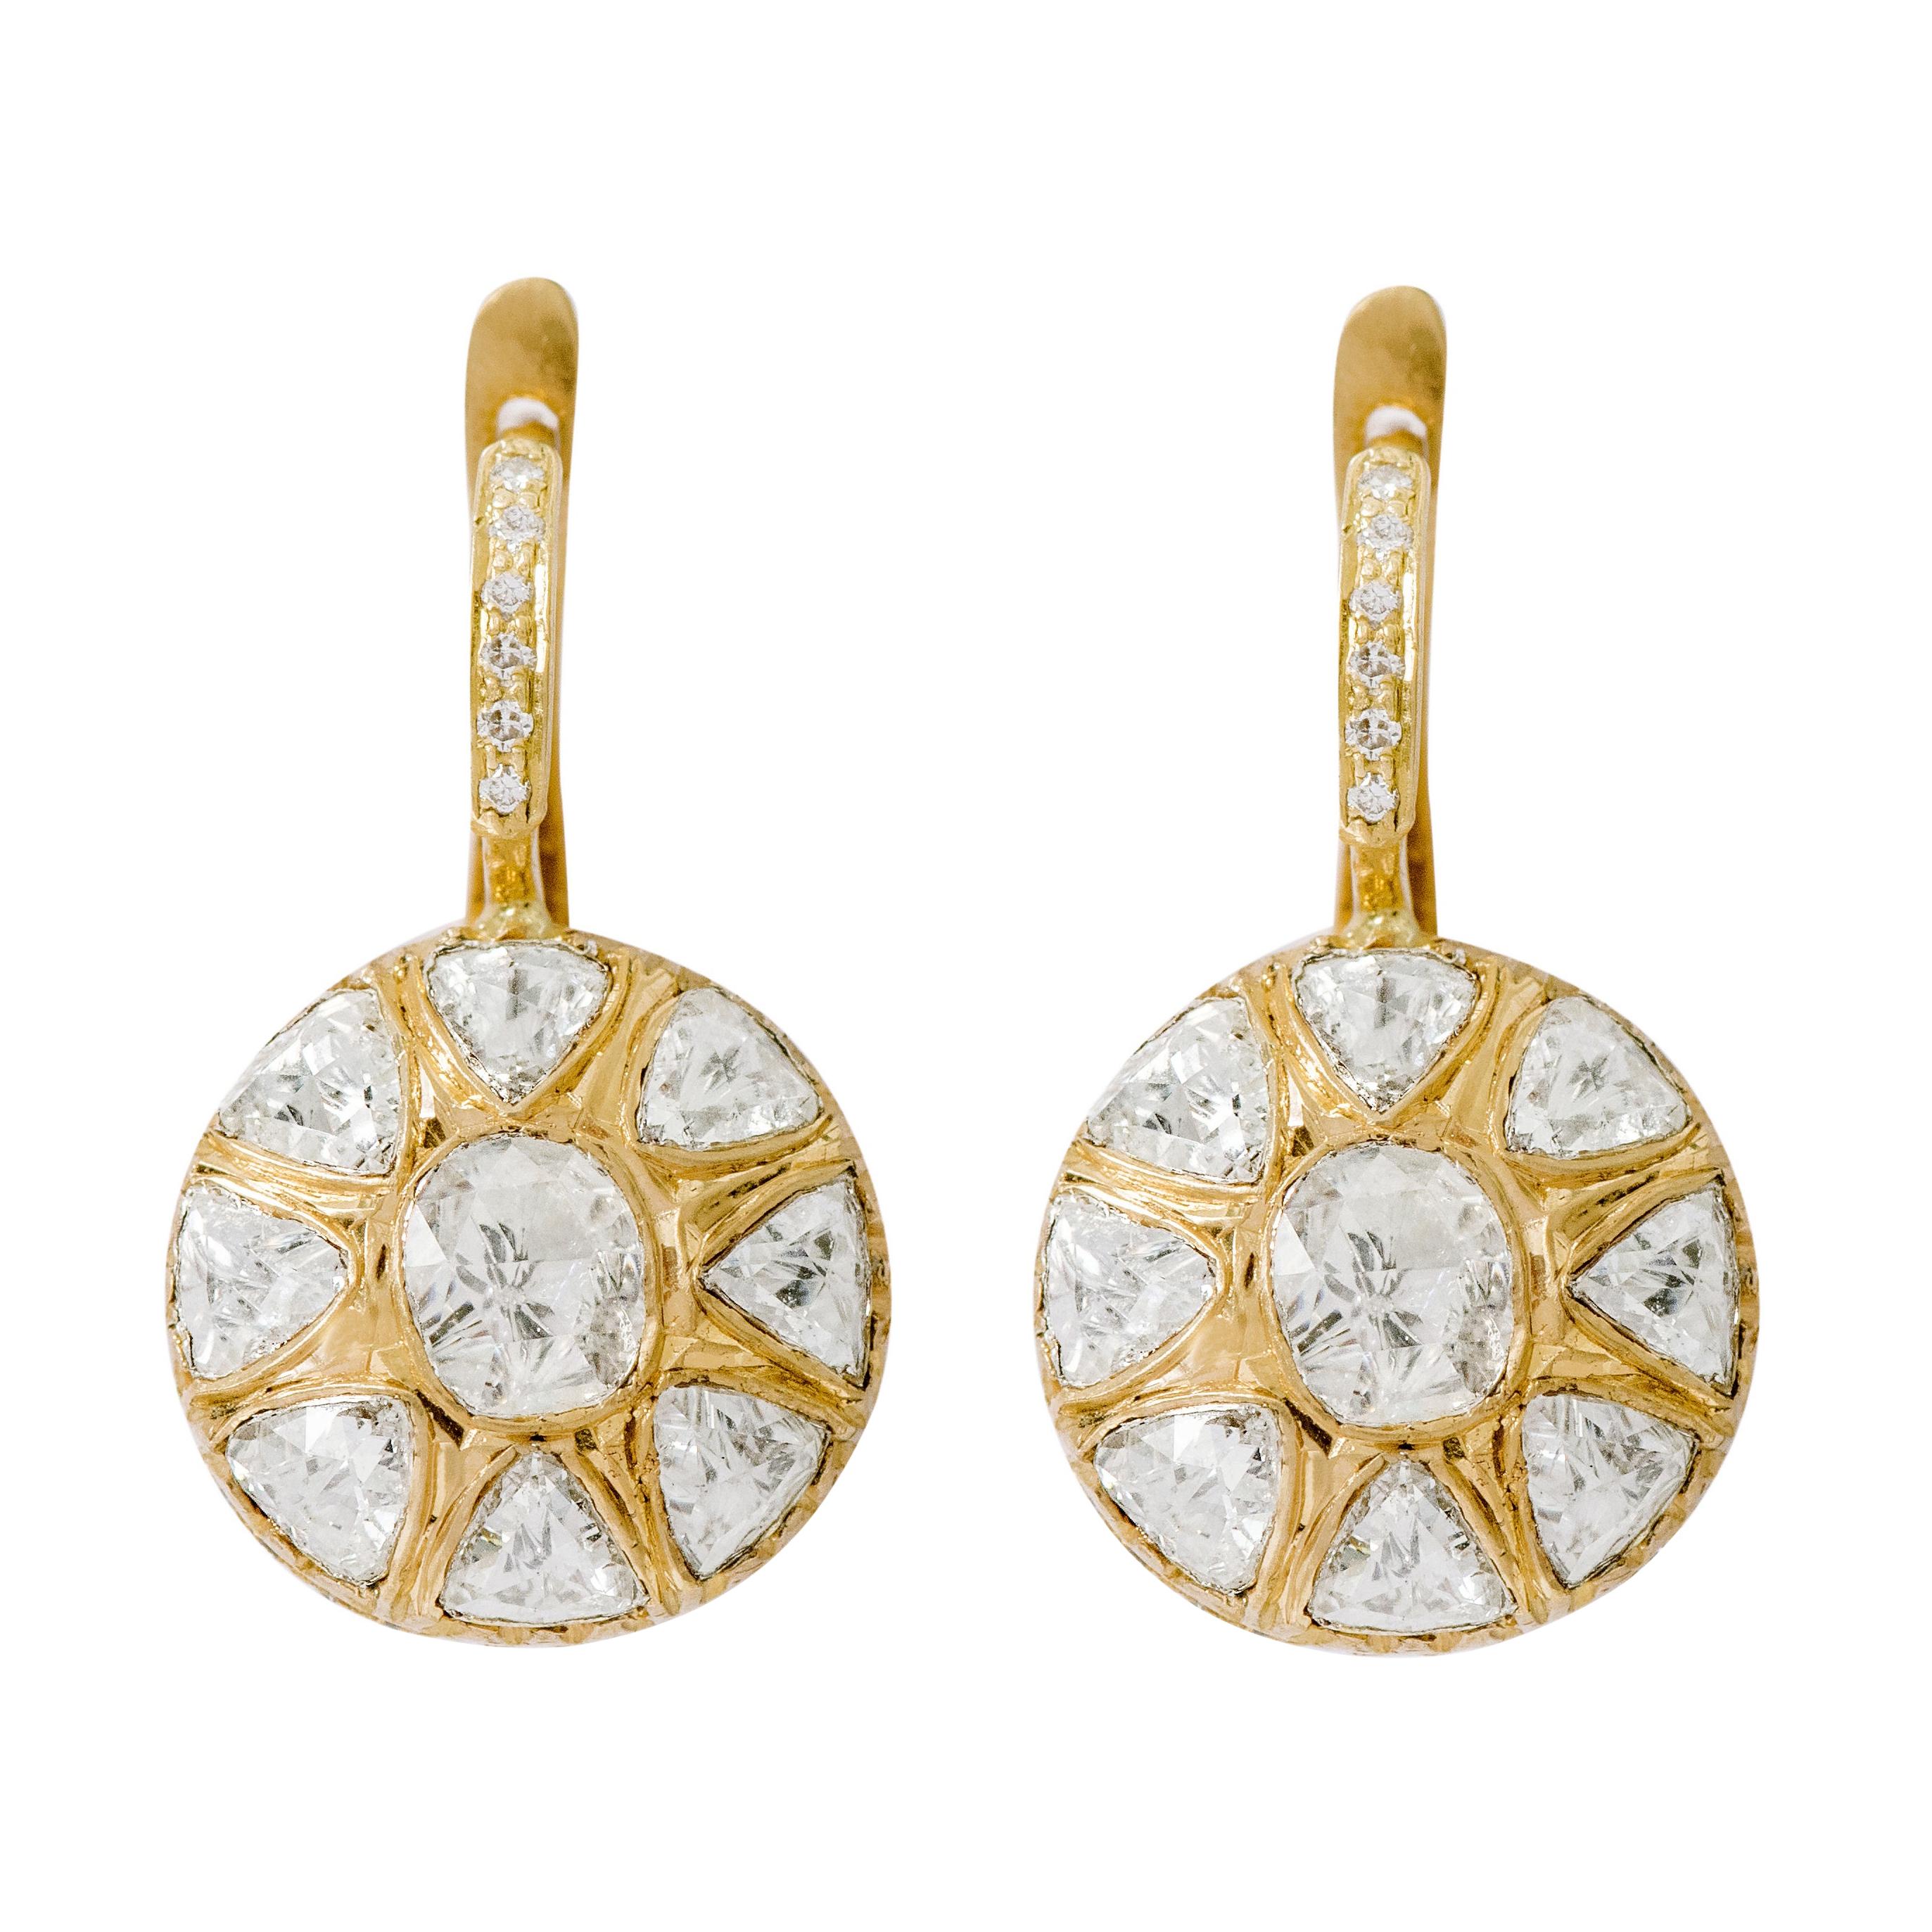 18 Karat Yellow Gold Rose-Cut Diamond Dangle Earrings in Art Deco Style